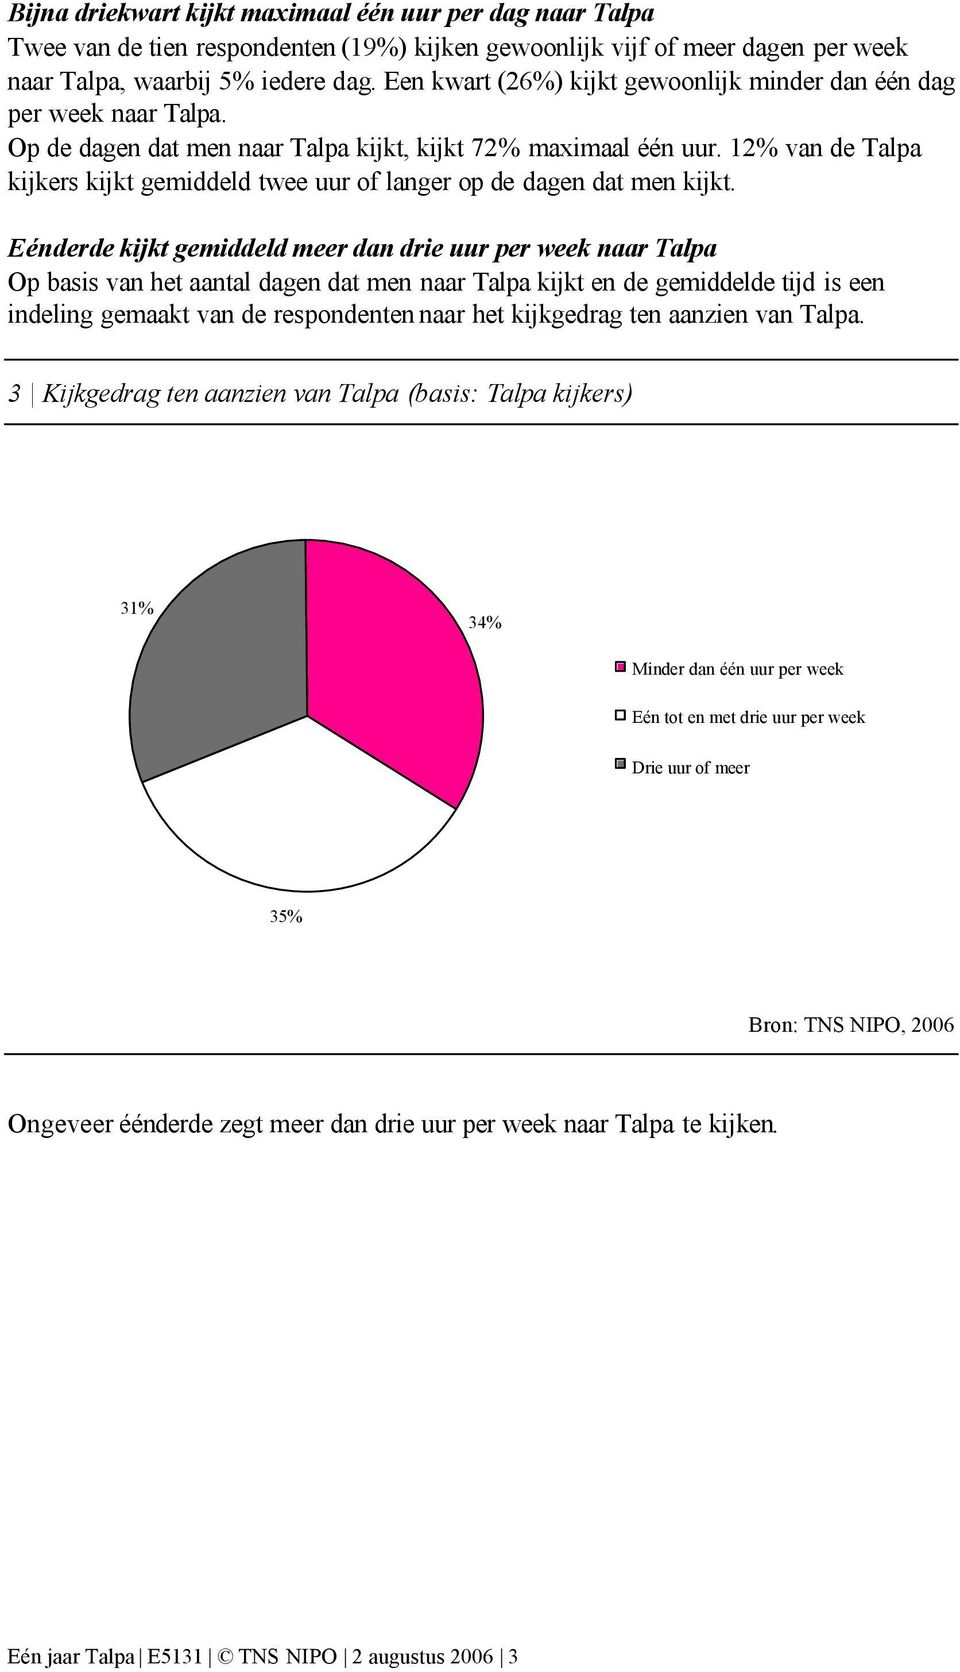 12% van de Talpa kijkers kijkt gemiddeld twee uur of langer op de dagen dat men kijkt.